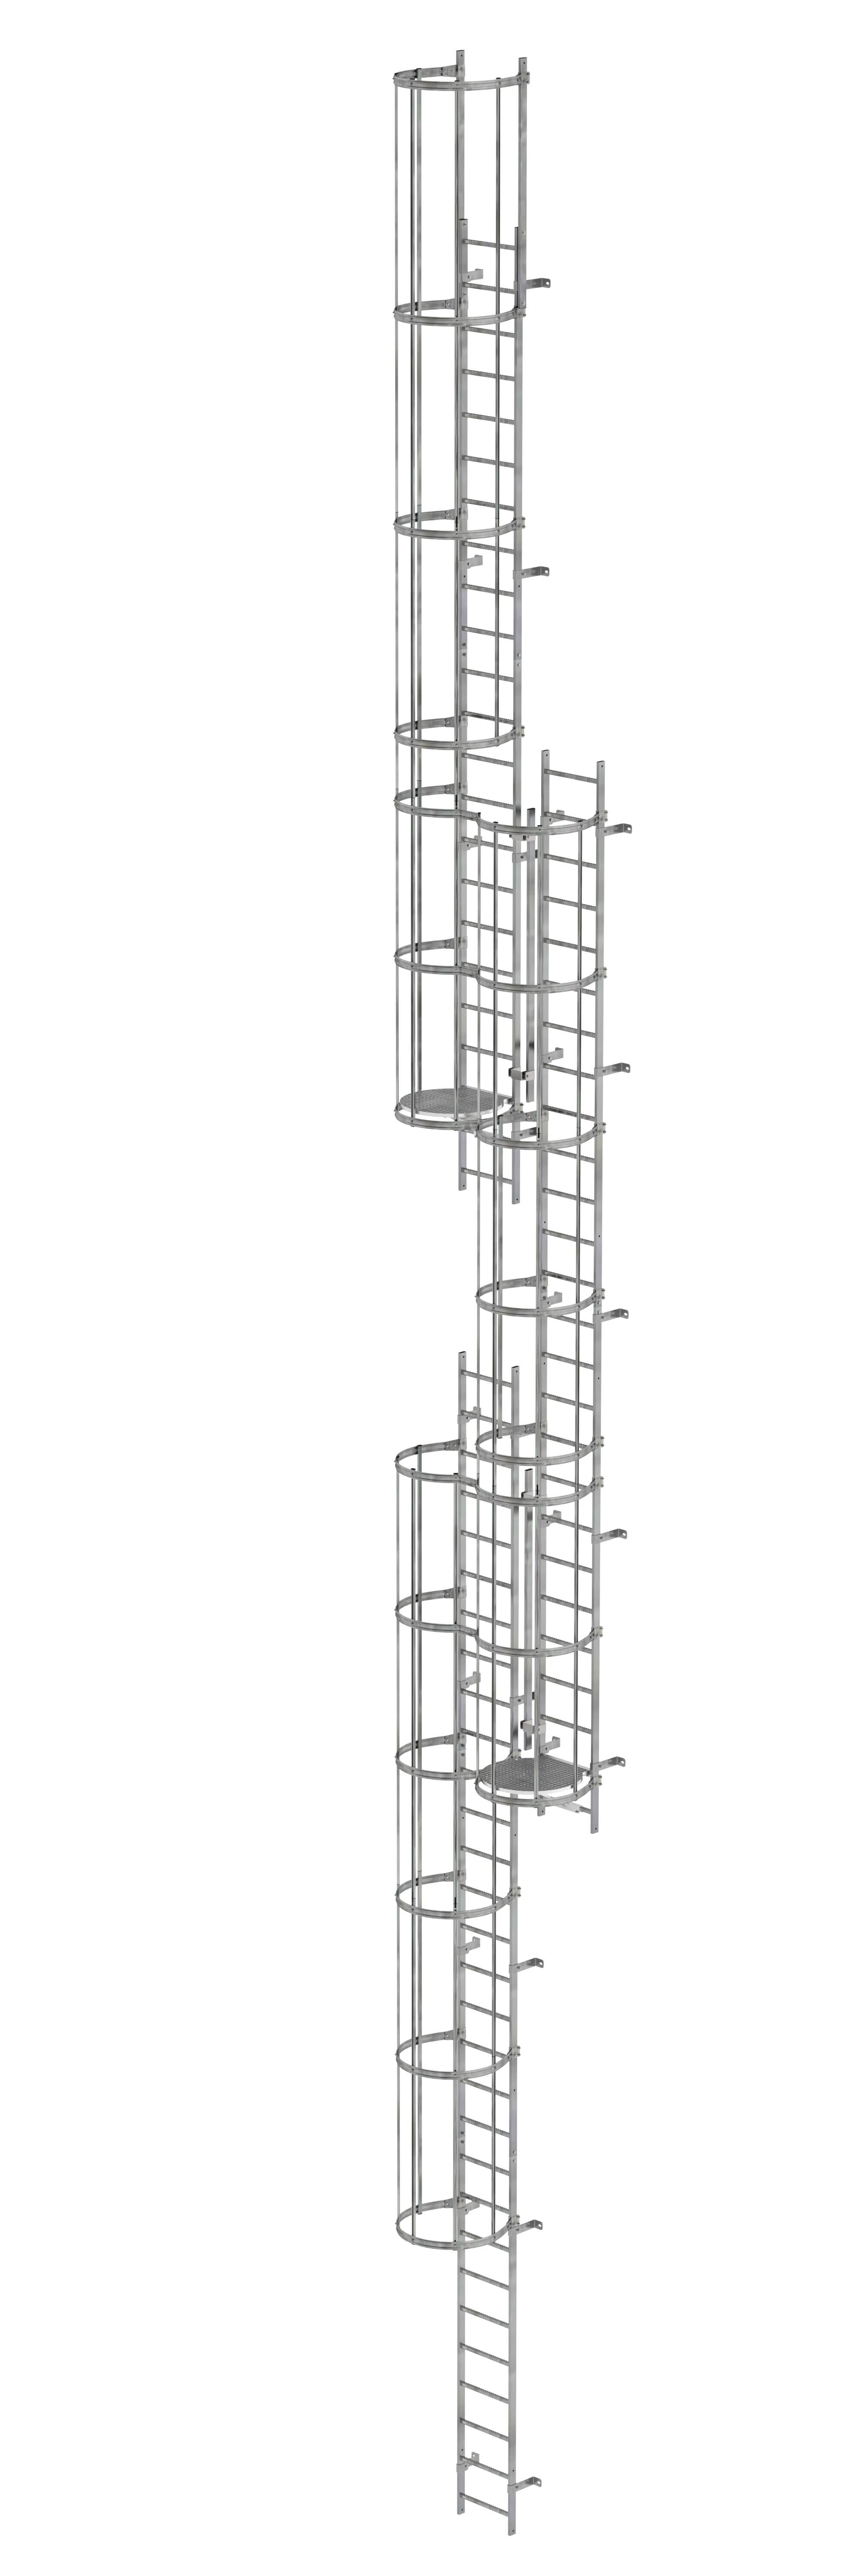 Mehrzügige Steigleiter mit Rückenschutz (Maschinen) Stahl verzinkt 17,16m